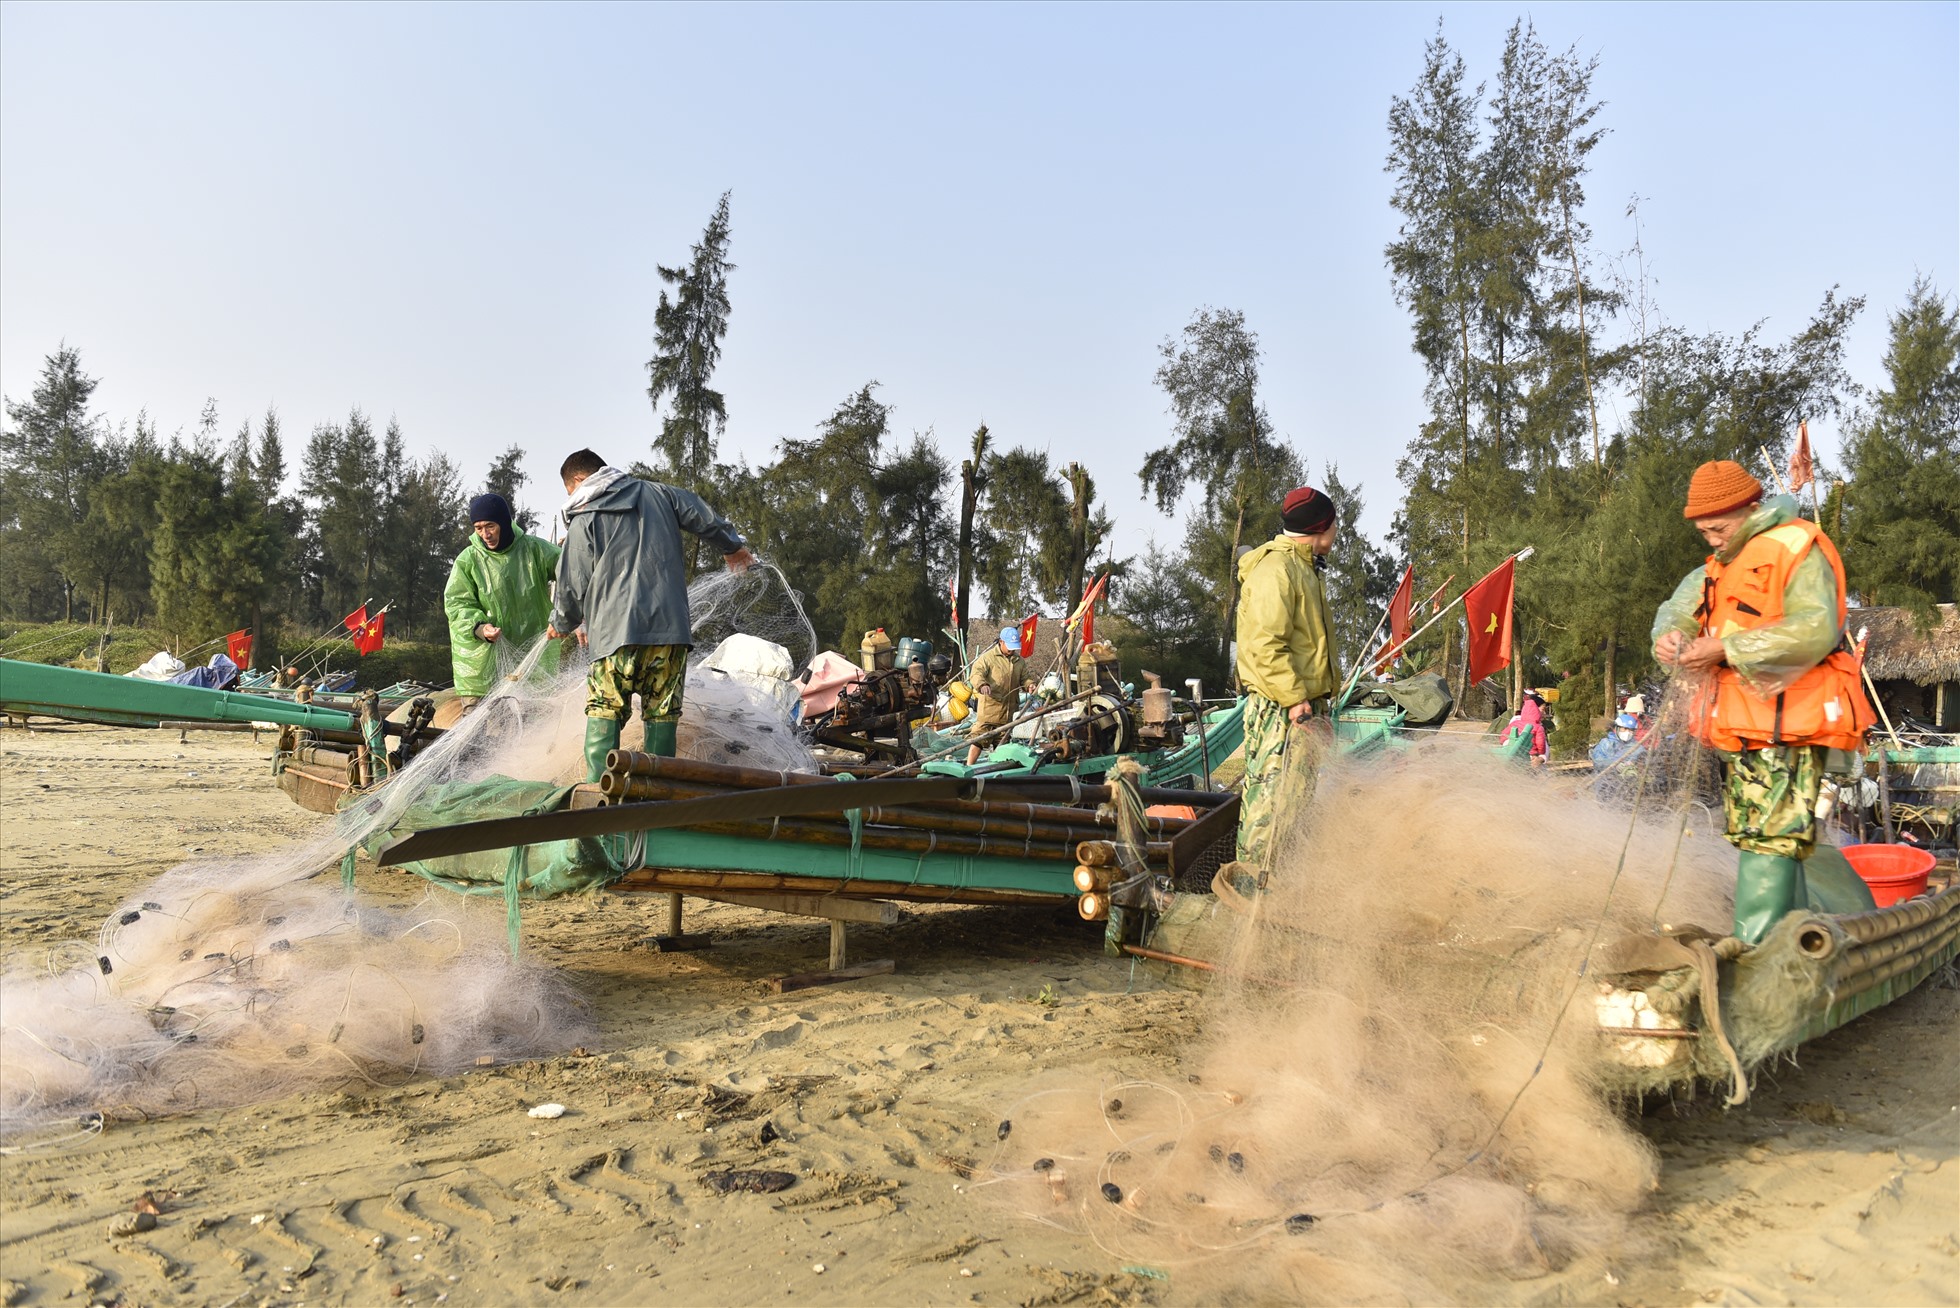 Tại huyện Quảng Xương, ngư dân hối hả chuẩn bị ngư lưới cụ, kéo thuyền vươn khơi trong sáng ngày Mùng 4 Tết. Ảnh: Quách Du